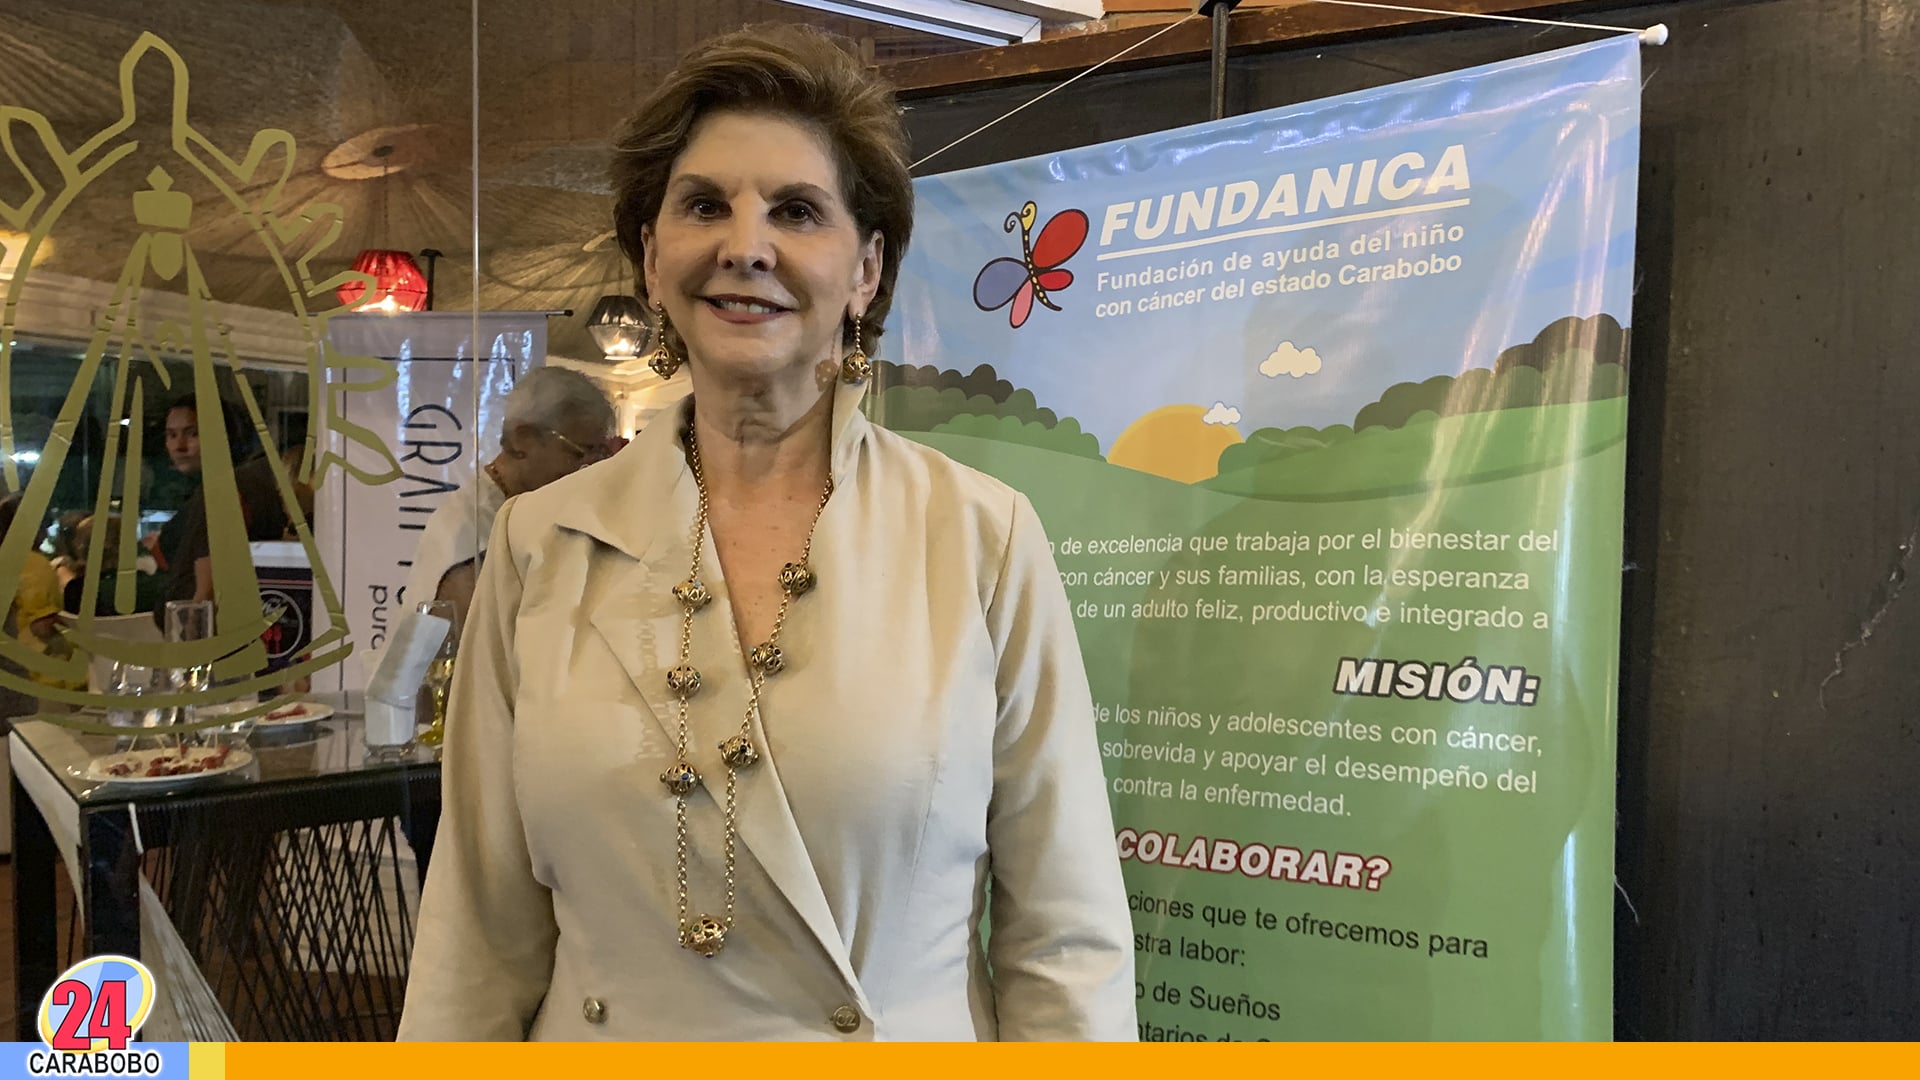 Cristina Sosa de Roversi -vicepresidenta de Fundanica